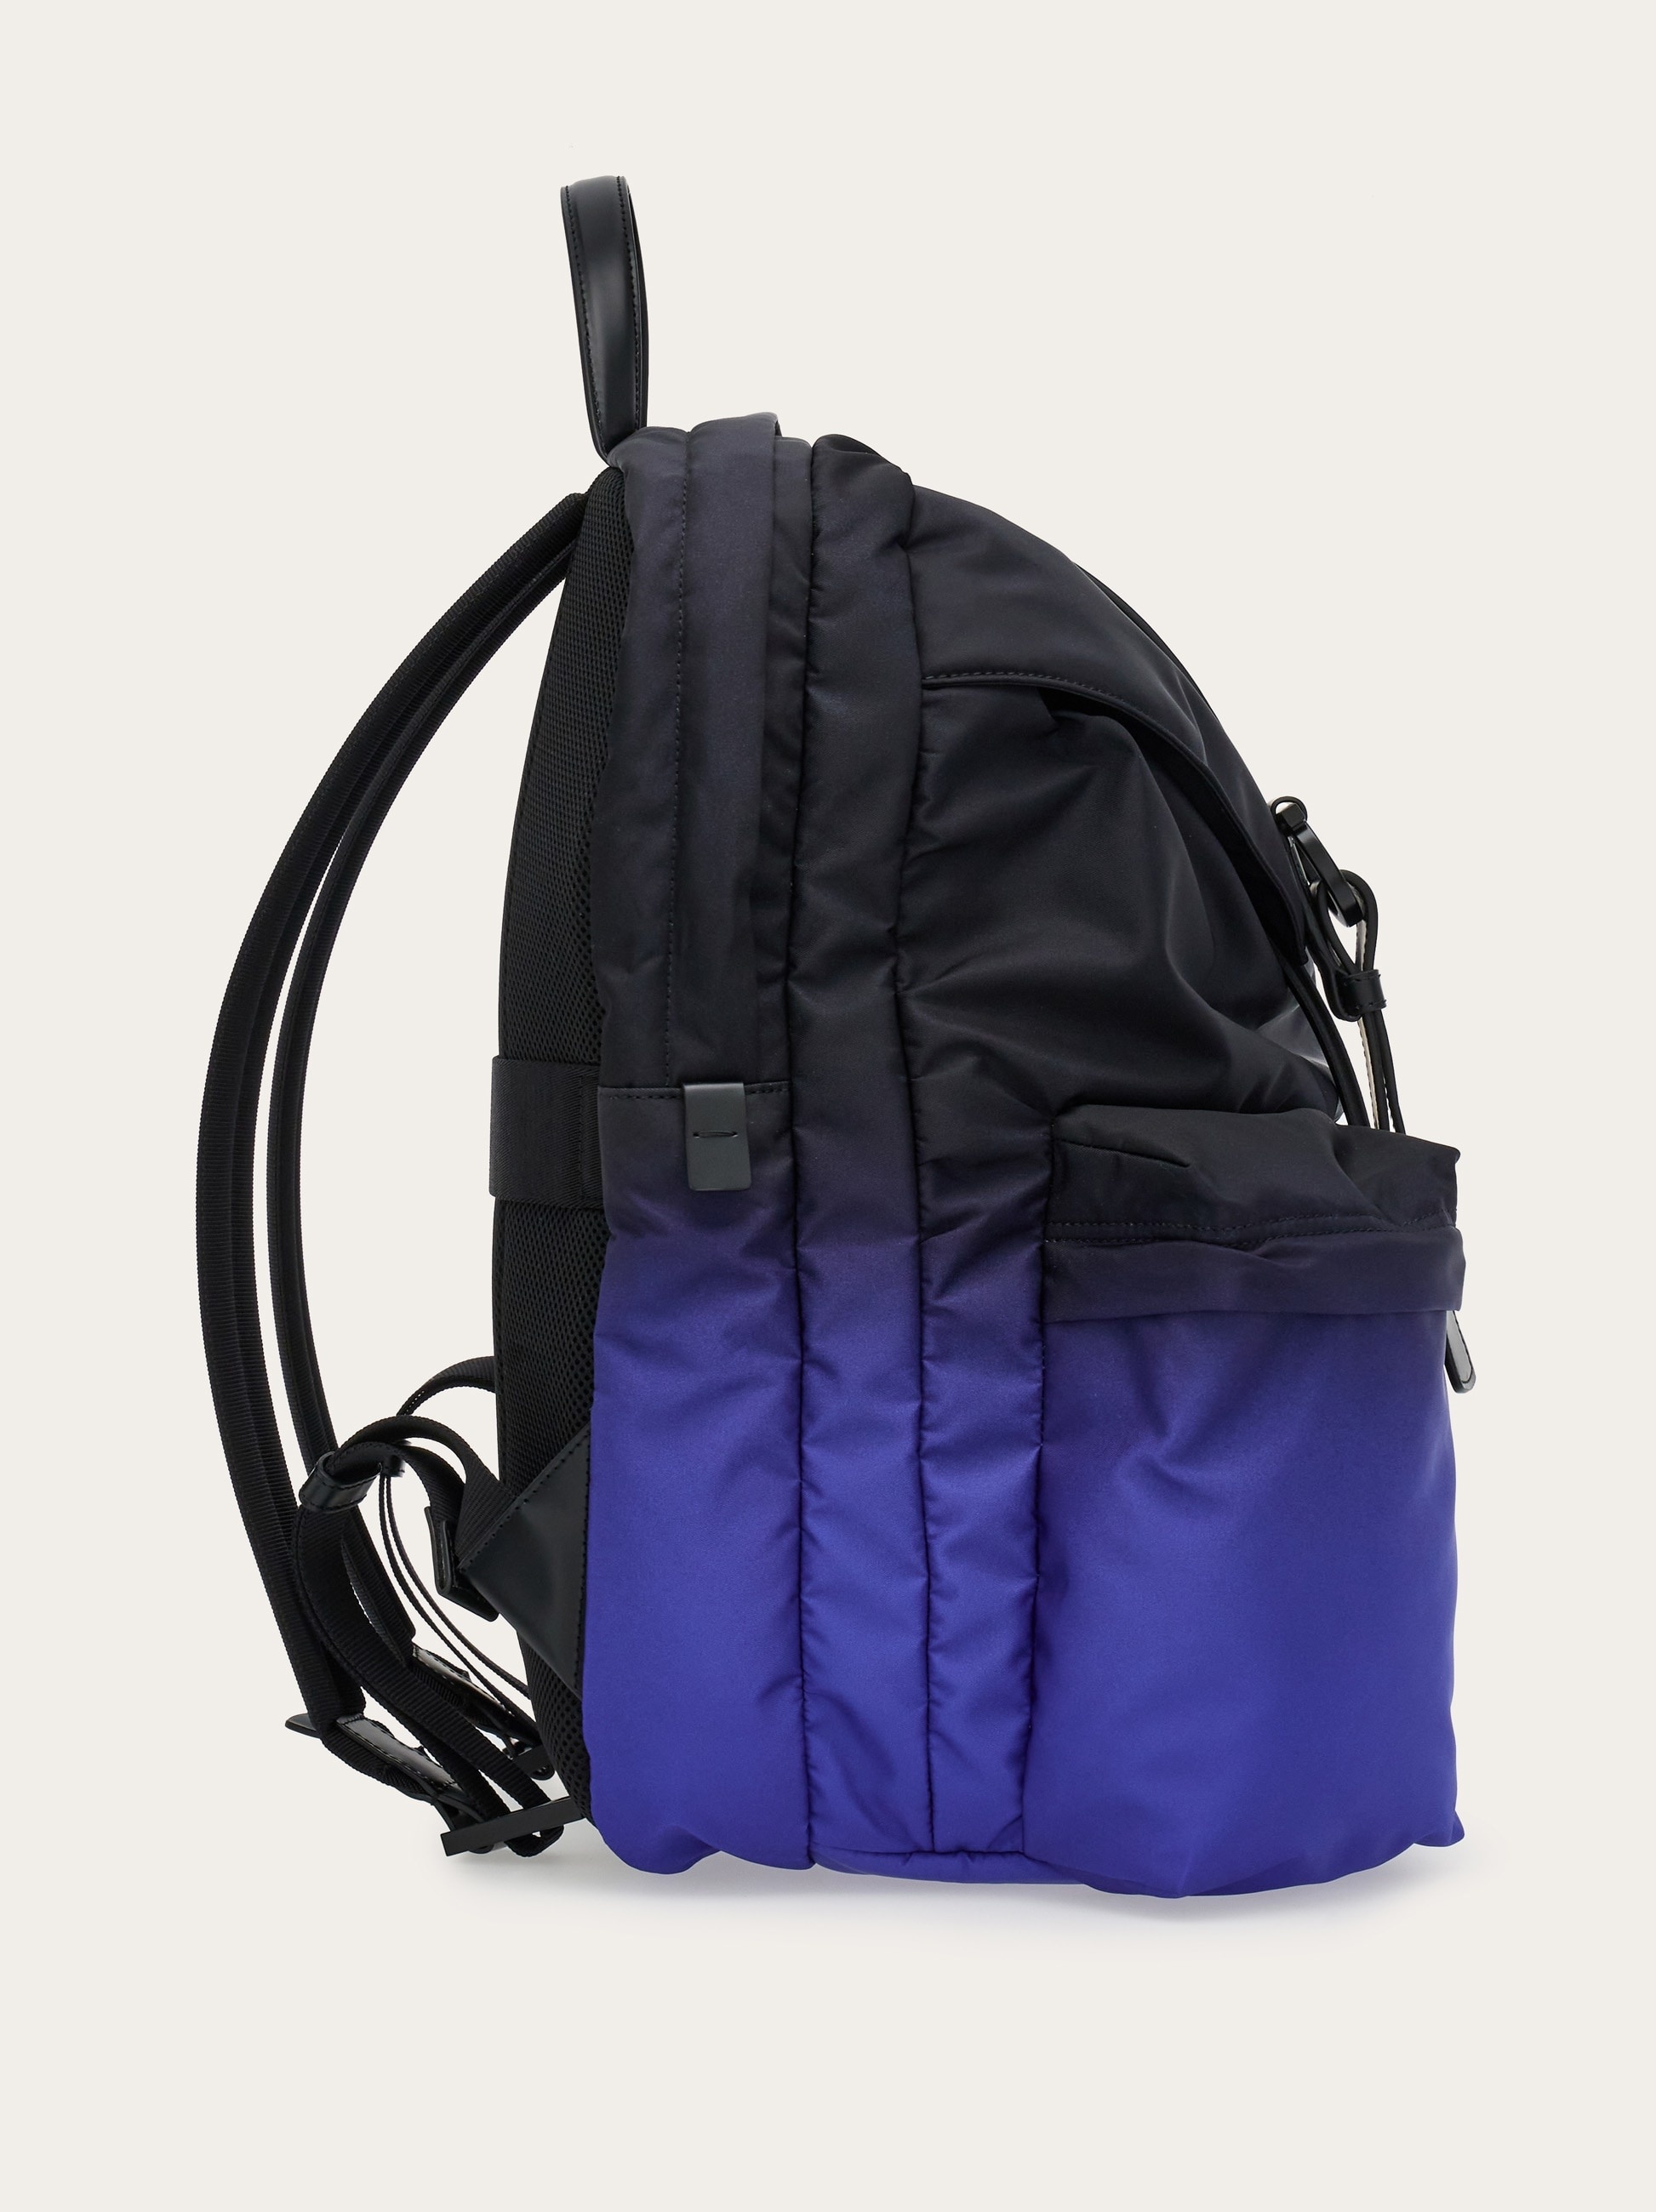 Dual tone backpack - 3